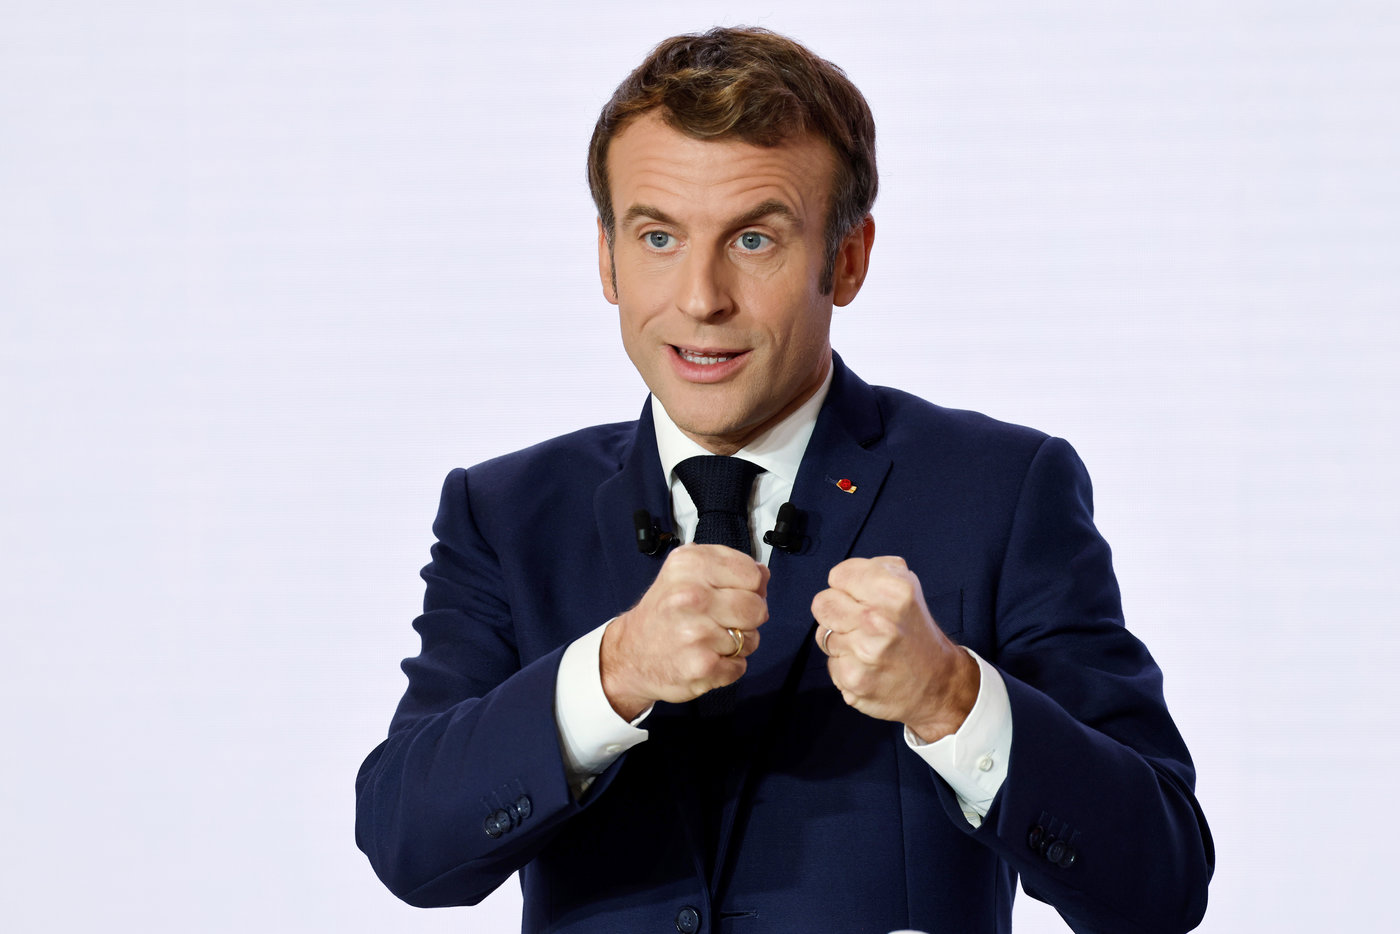 France : Macron dissout le corps diplomatique au nom de la rationalisation, ça fait grand bruit